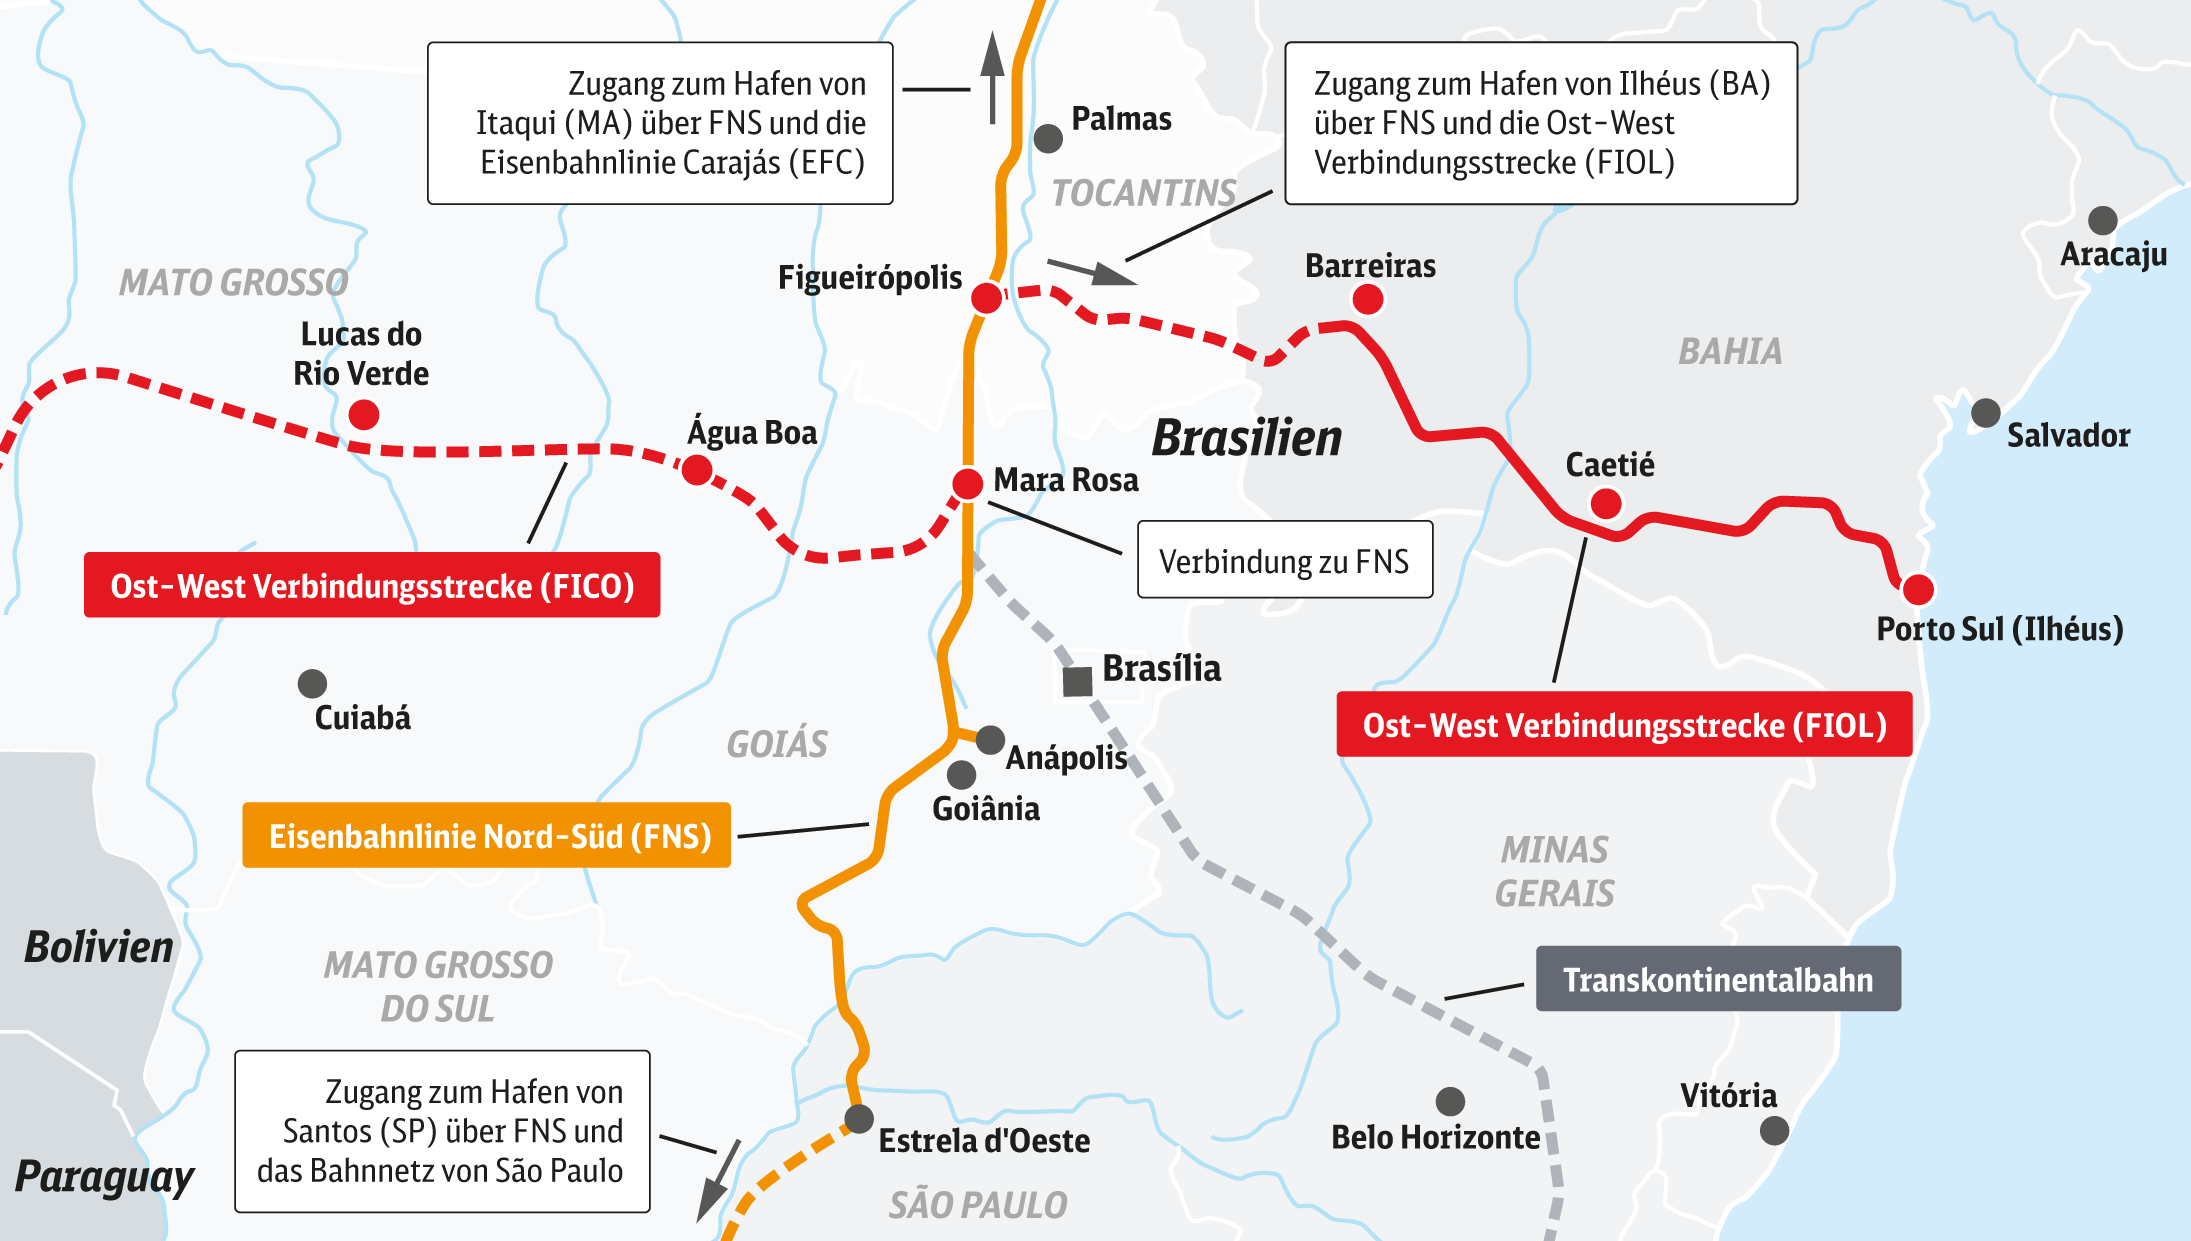 FICO- FIOL Projekt: Abschnitte des Eisenbahnkorridors mit seinen Verbindungen zu den Atlantikhäfen und zur Nord-Süd-Eisenbahnstrecke, abgekürzt FNS